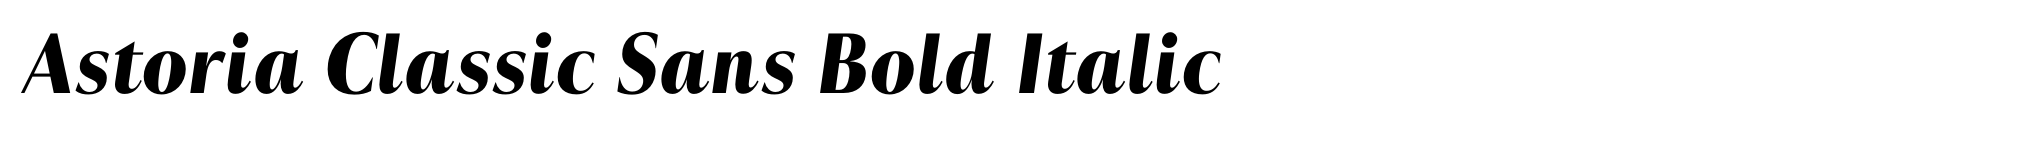 Astoria Classic Sans Bold Italic image